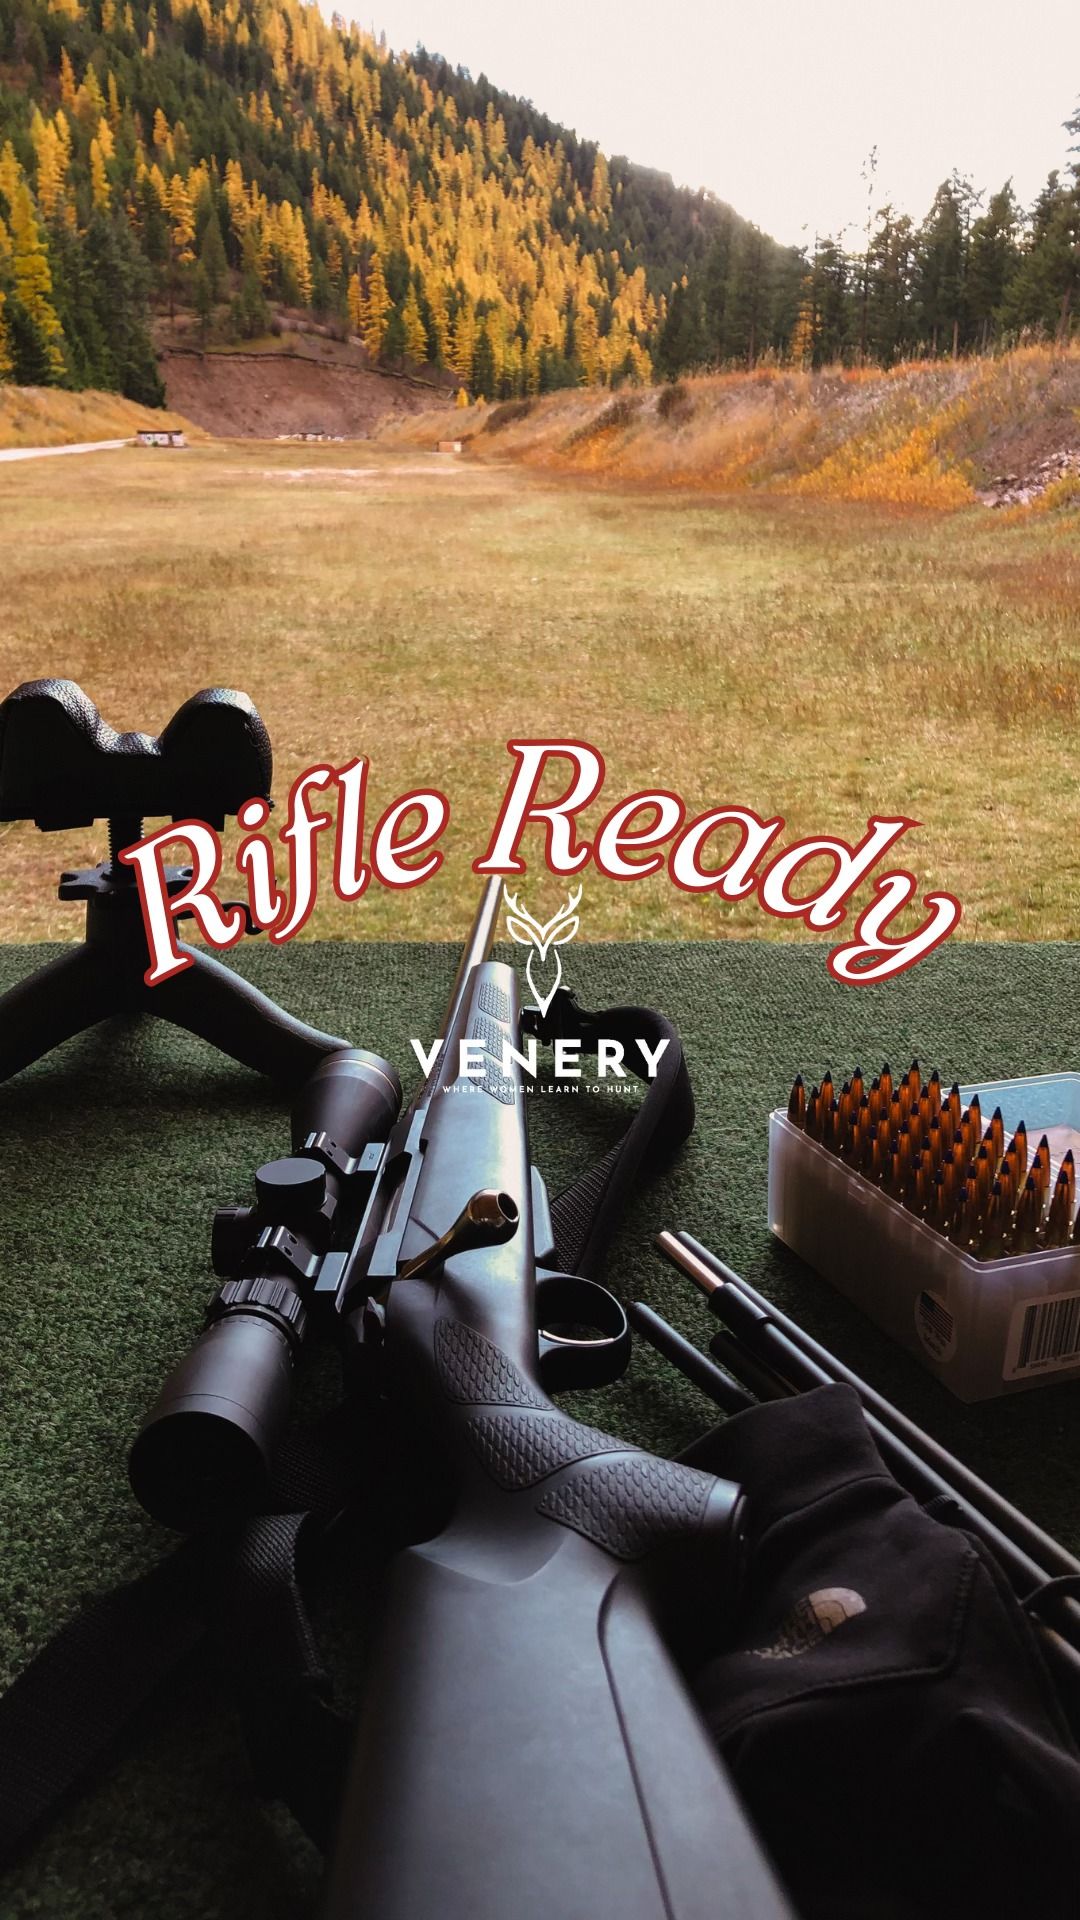 Rifle ready- Missoula 